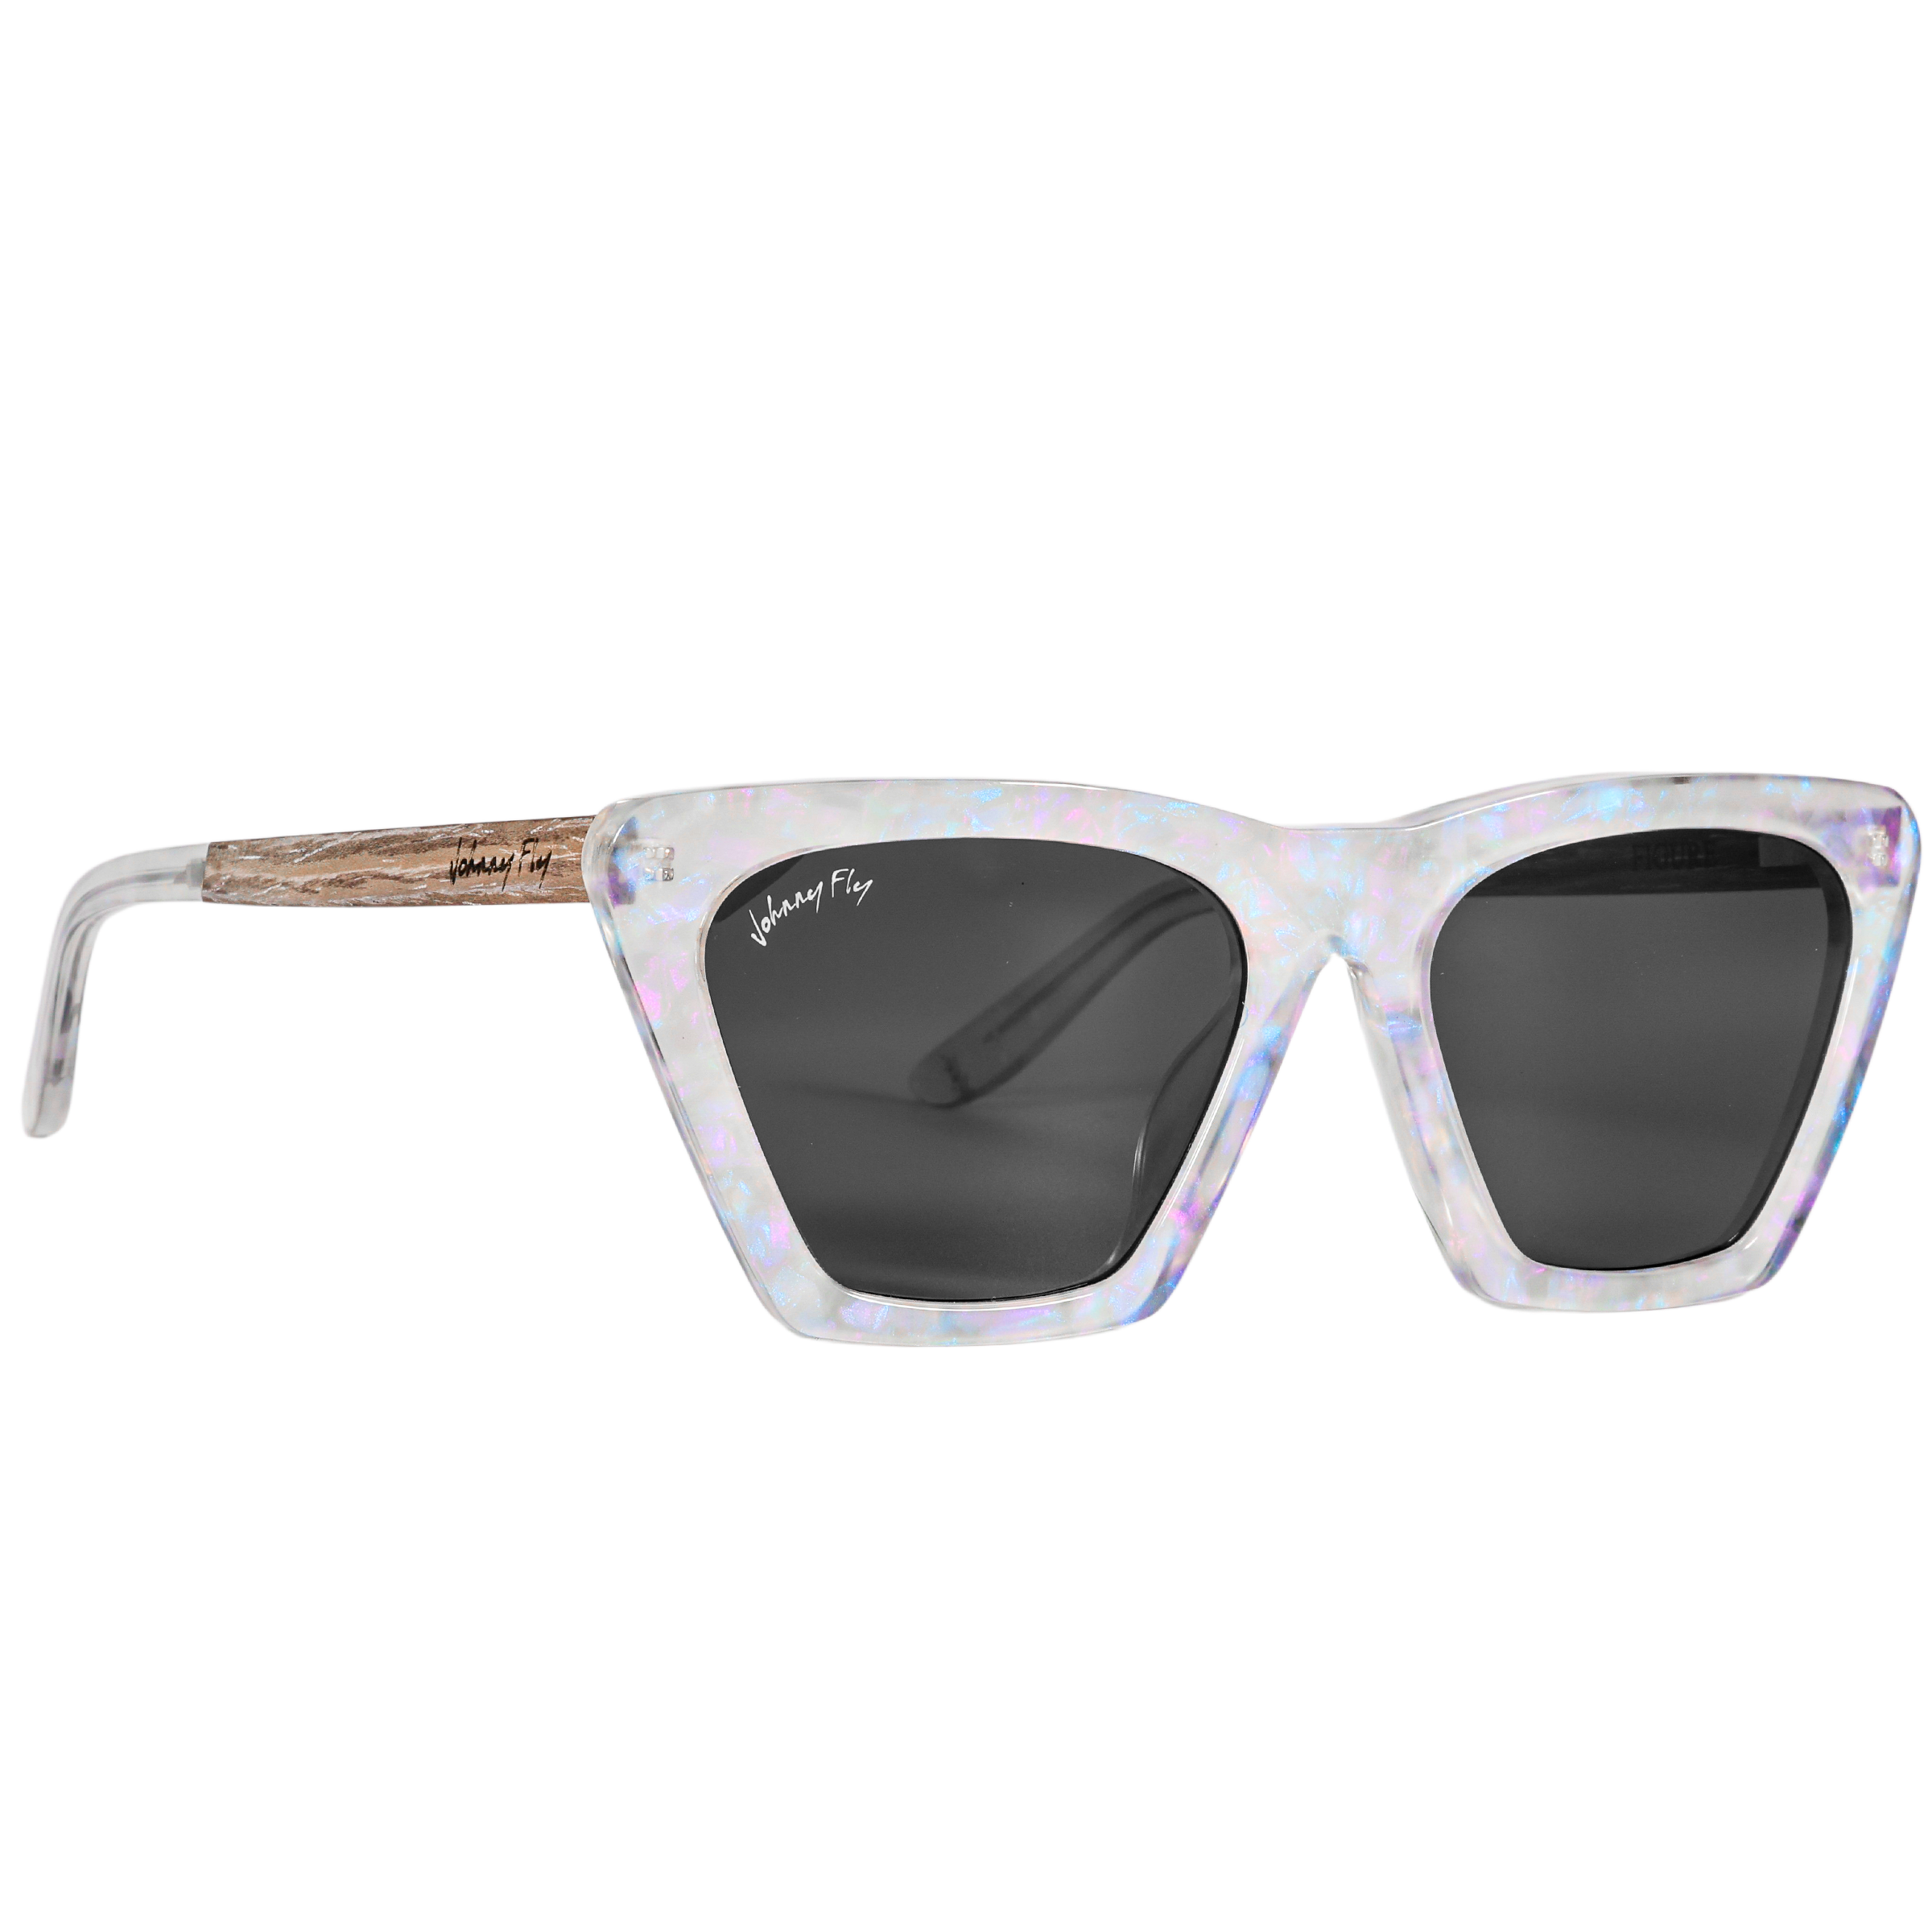 FIGURE - Unicorn Holographic Polarized wooden / acetate Sunglasses - Johnny Fly Eyewear | #color_unicorn